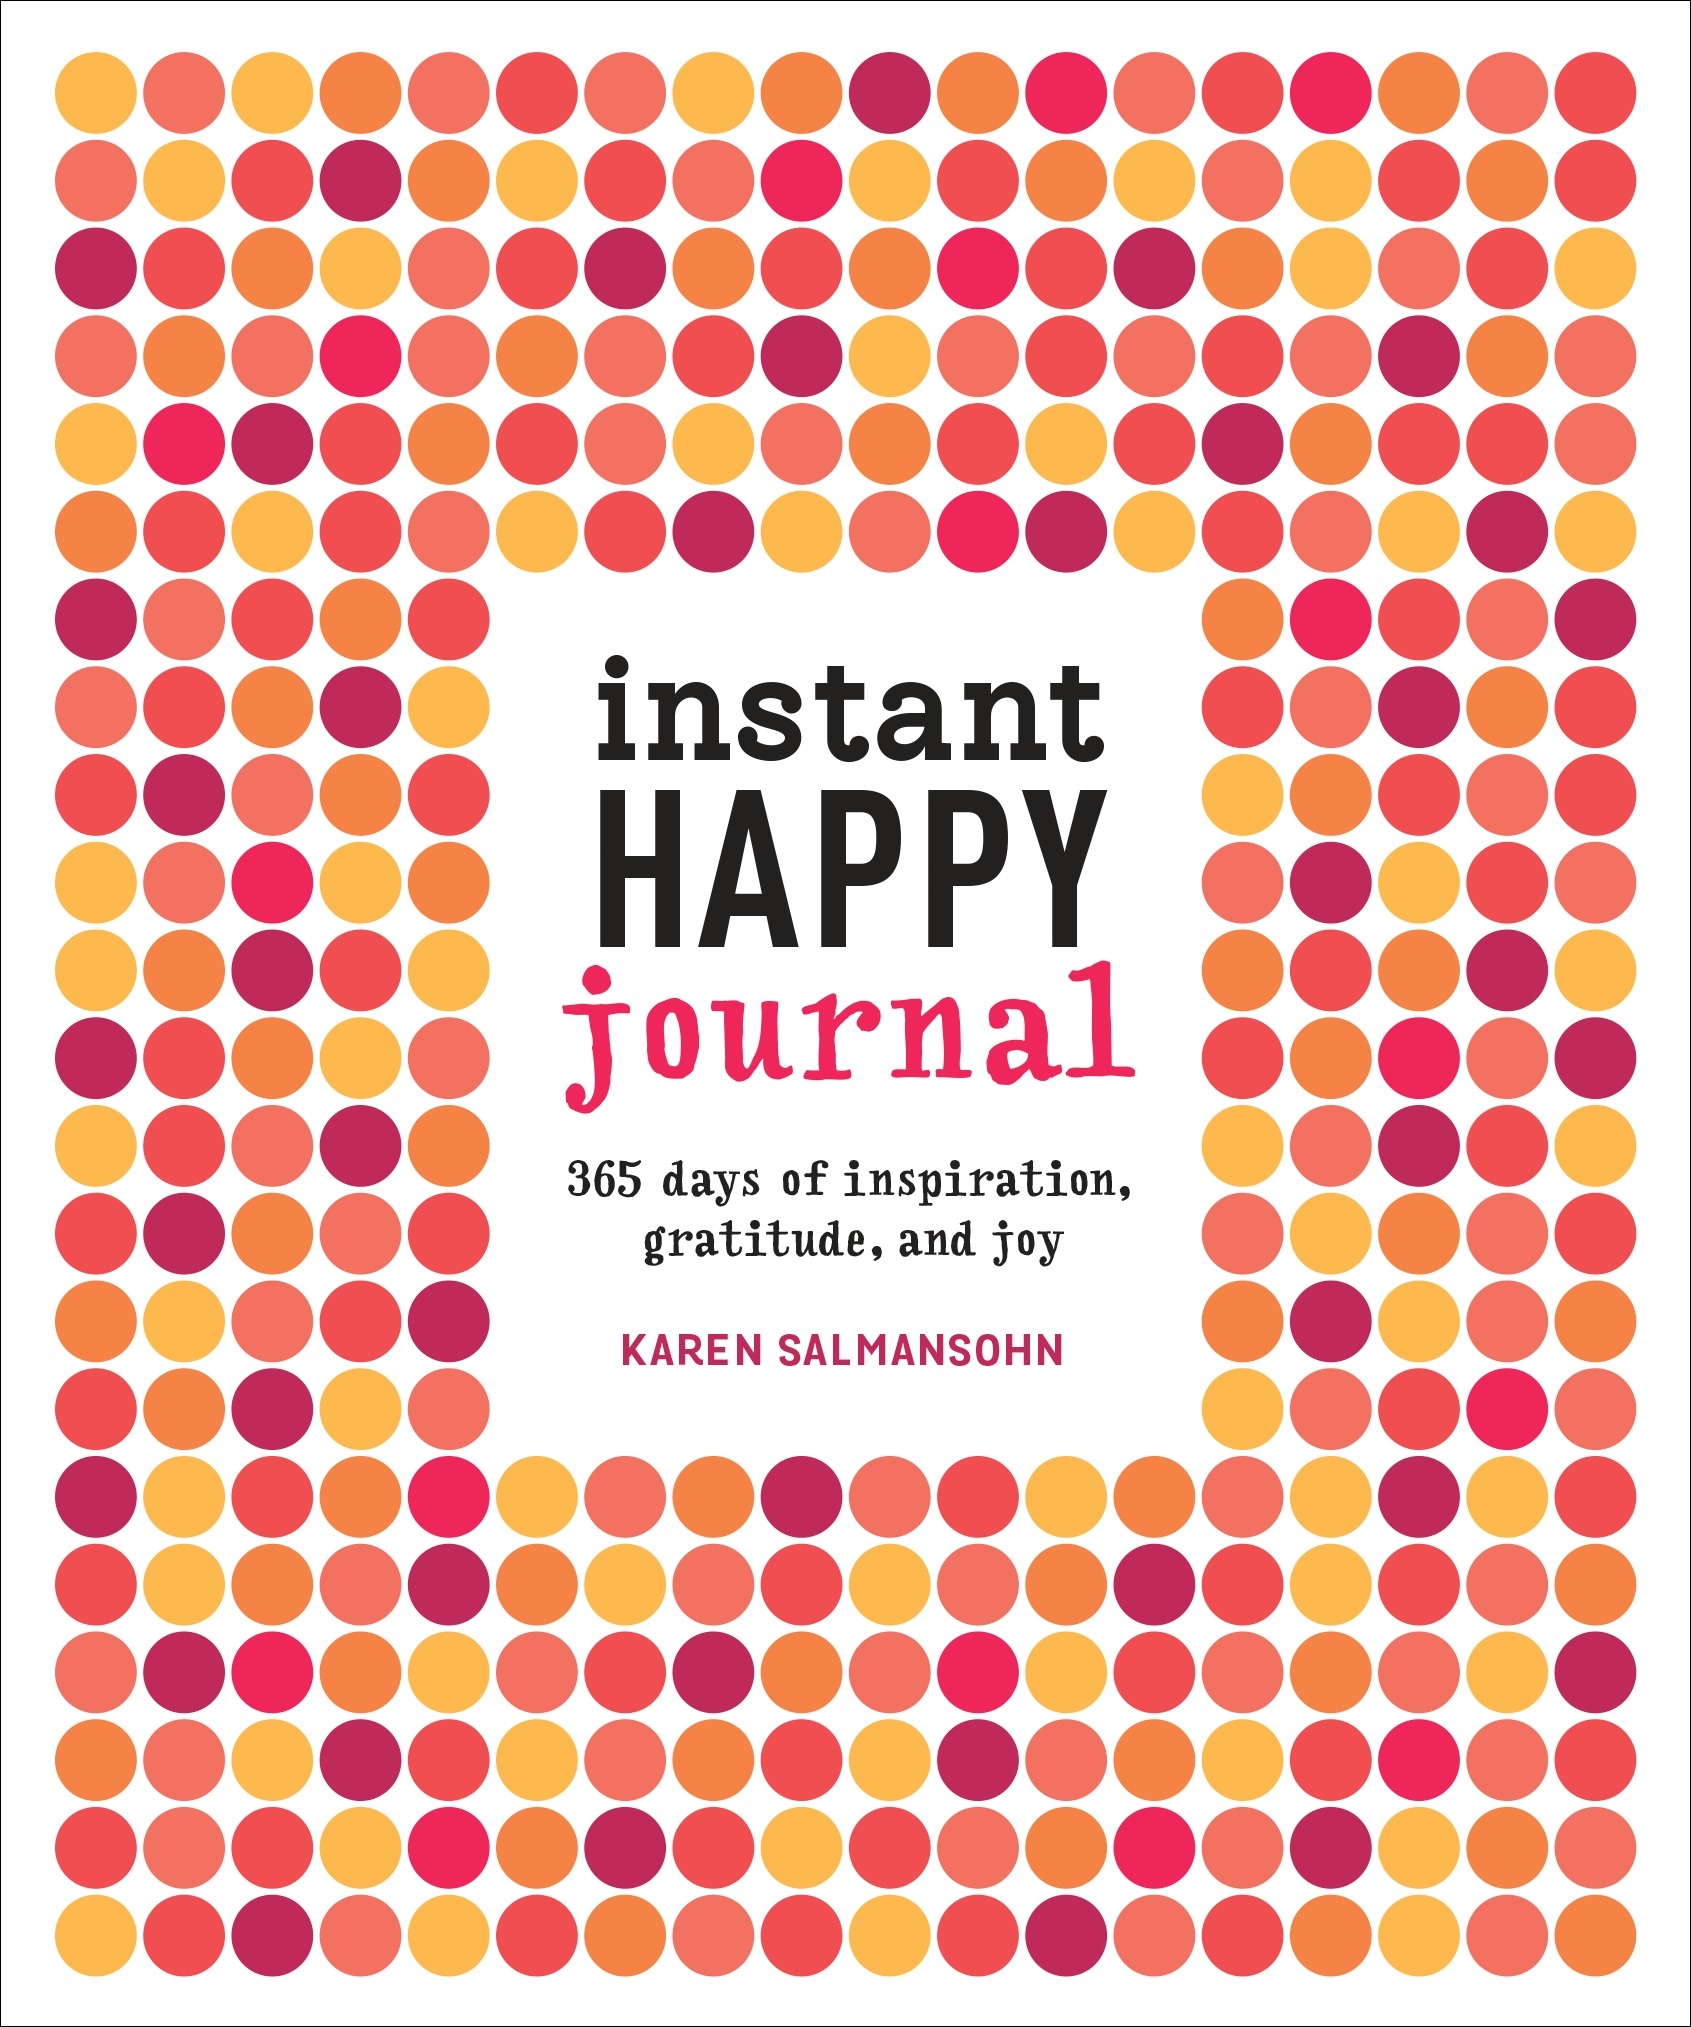 instant-happy-journal-by-karen-salmansohn-penguin-books-australia